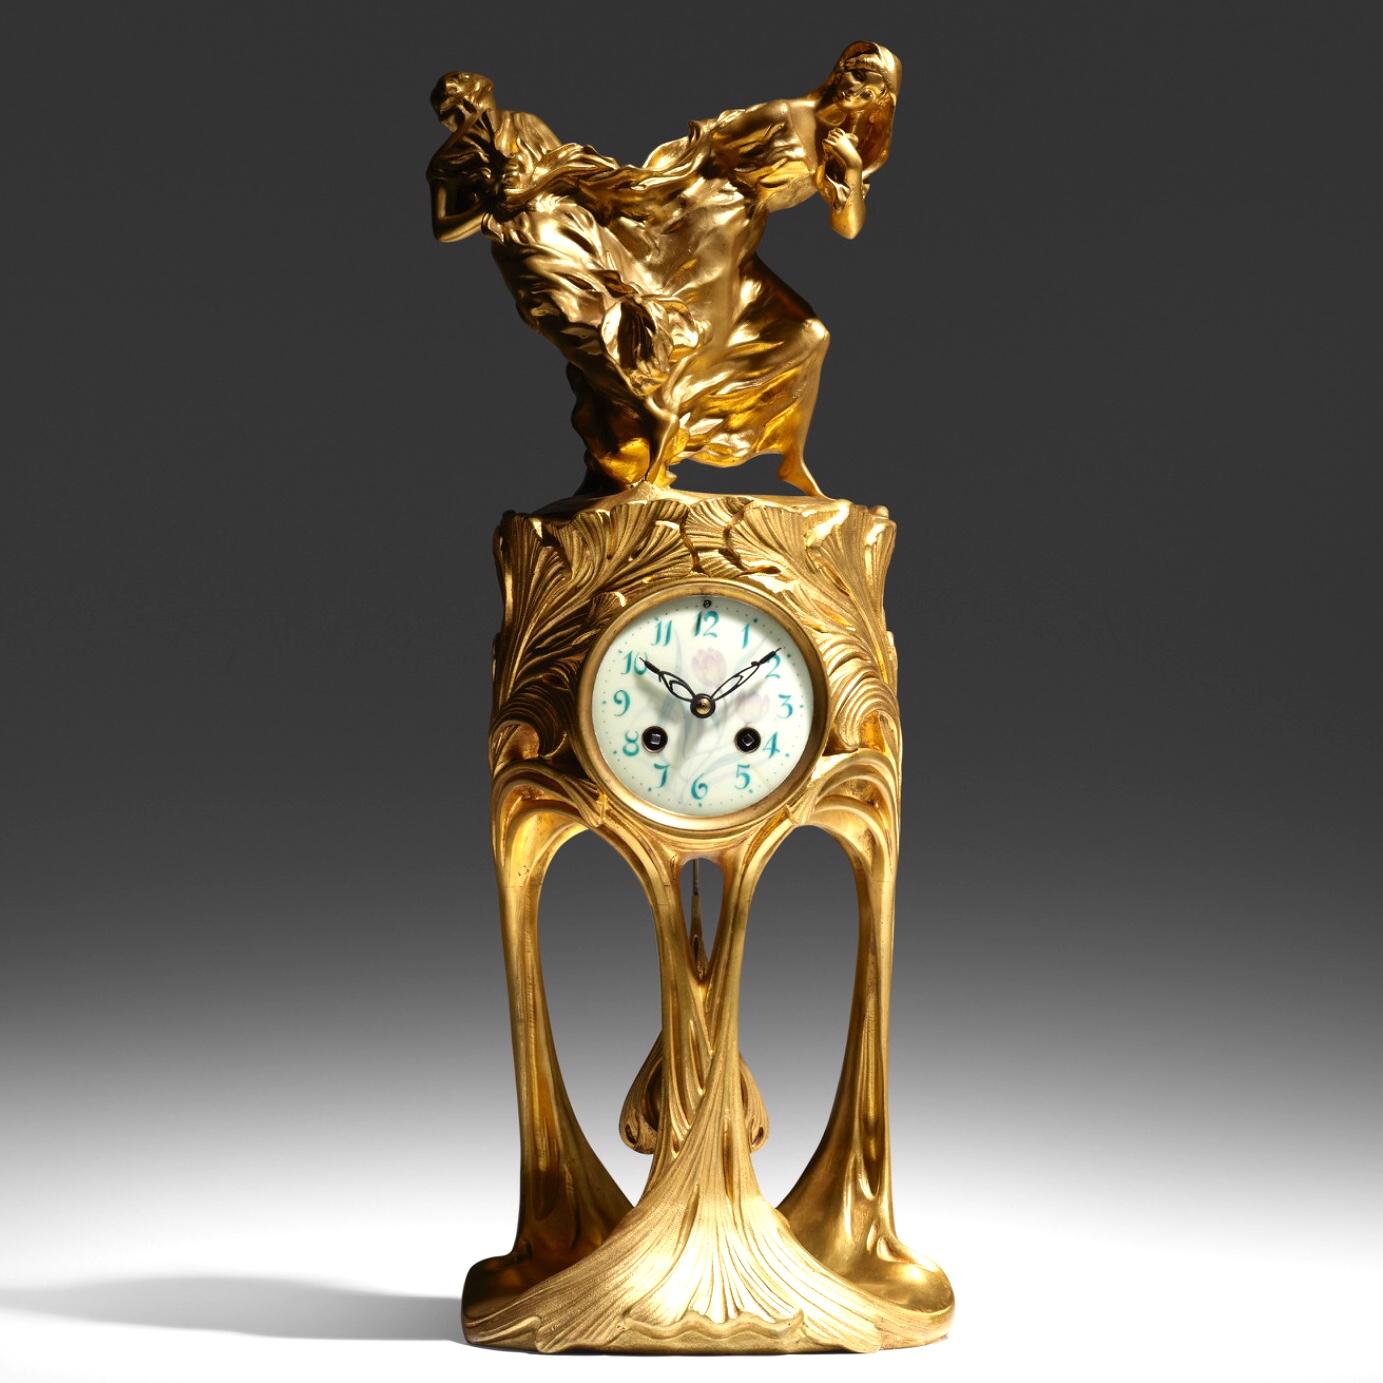 Maurice Dufrêne and Félix Voulot 
Rare Art Nouveau Gilt Bronze Museum Clock
Paris France, circa 1900
Gilt bronze, enameled metal
Dimensions: 21.5 × 9 × 8 inches (55 × 23 × 20 cm)

Art nouveau clock features two dancing figures in flowing